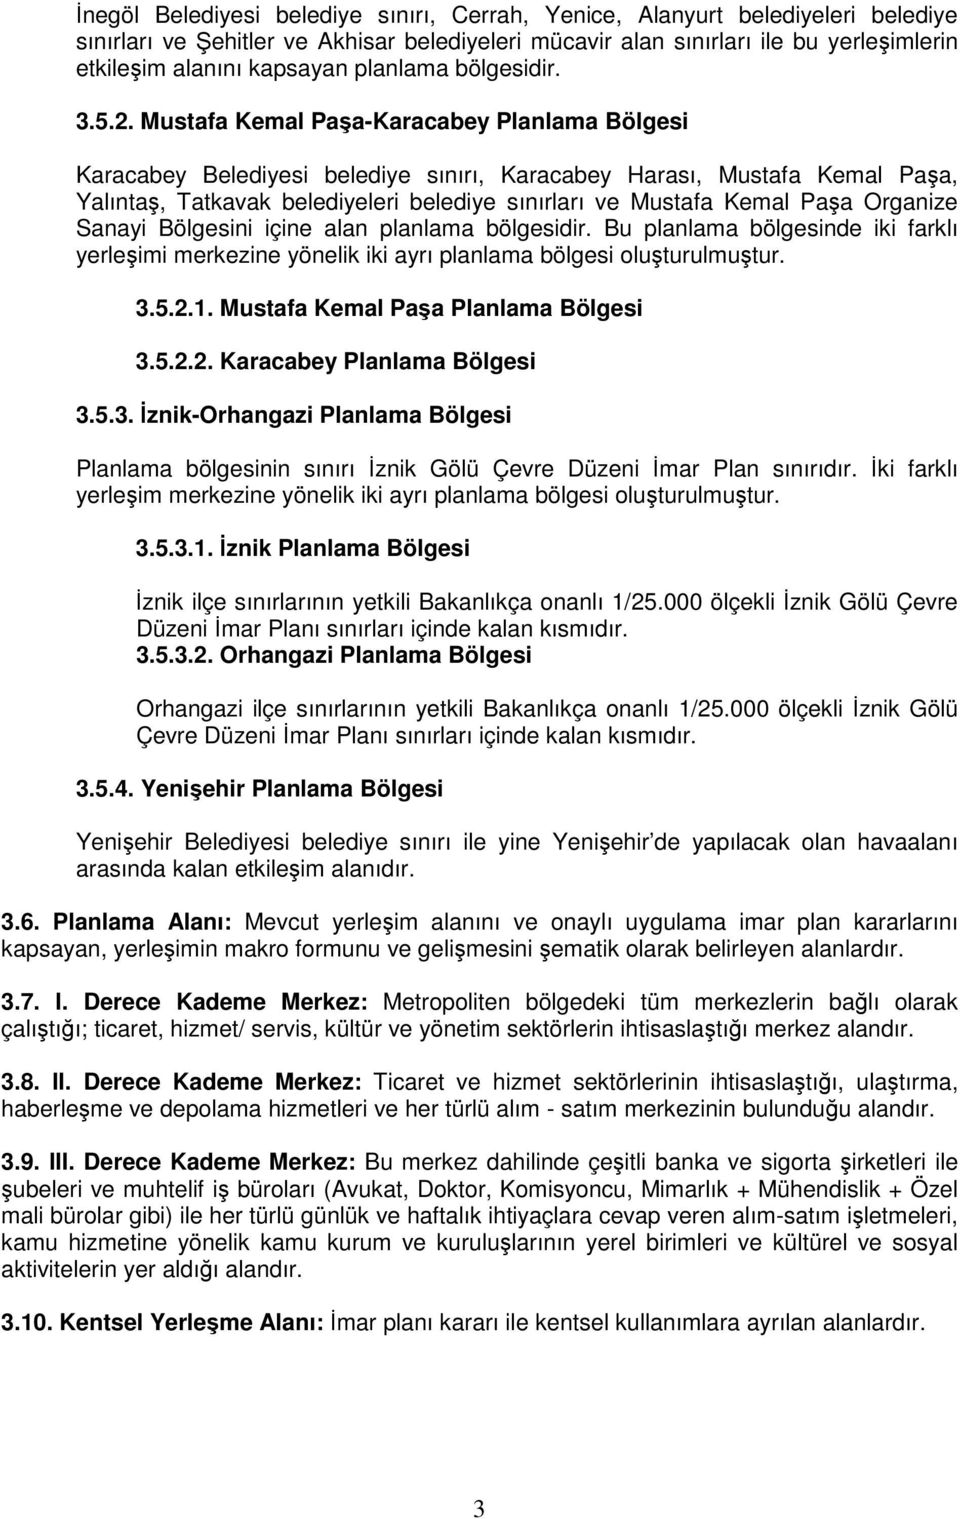 Mustafa Kemal Paşa-Karacabey Planlama Bölgesi Karacabey Belediyesi belediye sınırı, Karacabey Harası, Mustafa Kemal Paşa, Yalıntaş, Tatkavak belediyeleri belediye sınırları ve Mustafa Kemal Paşa